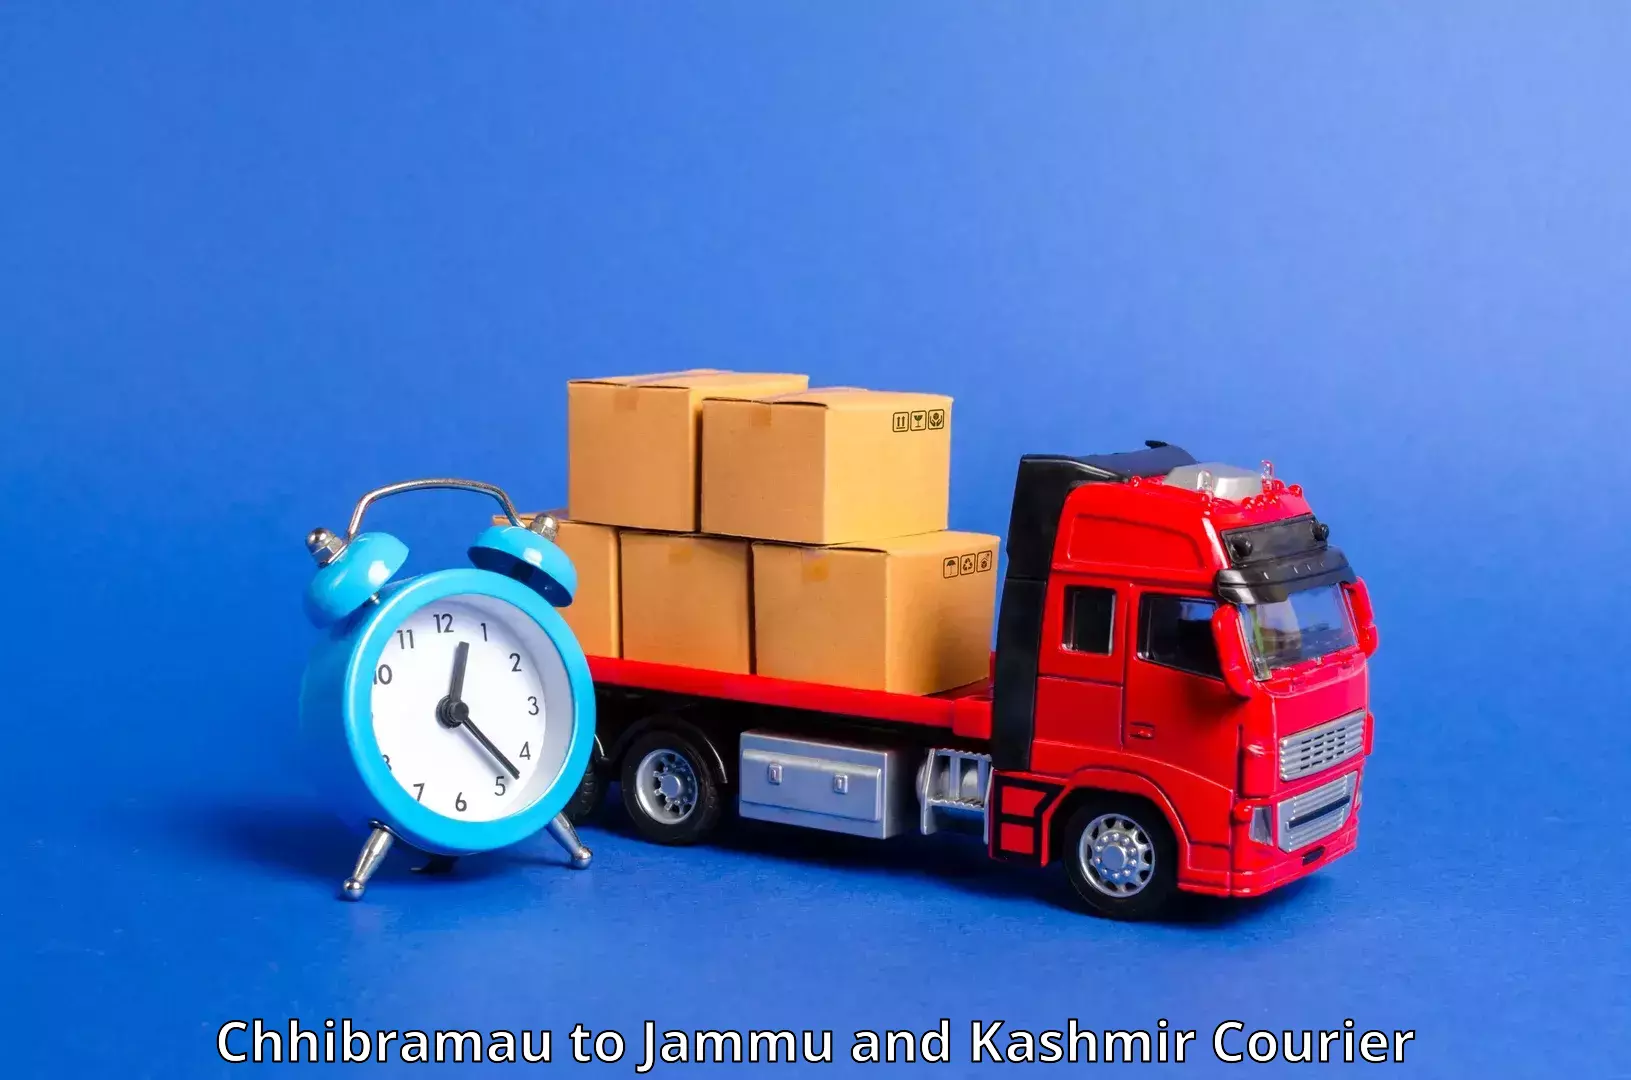 Global shipping networks Chhibramau to Udhampur